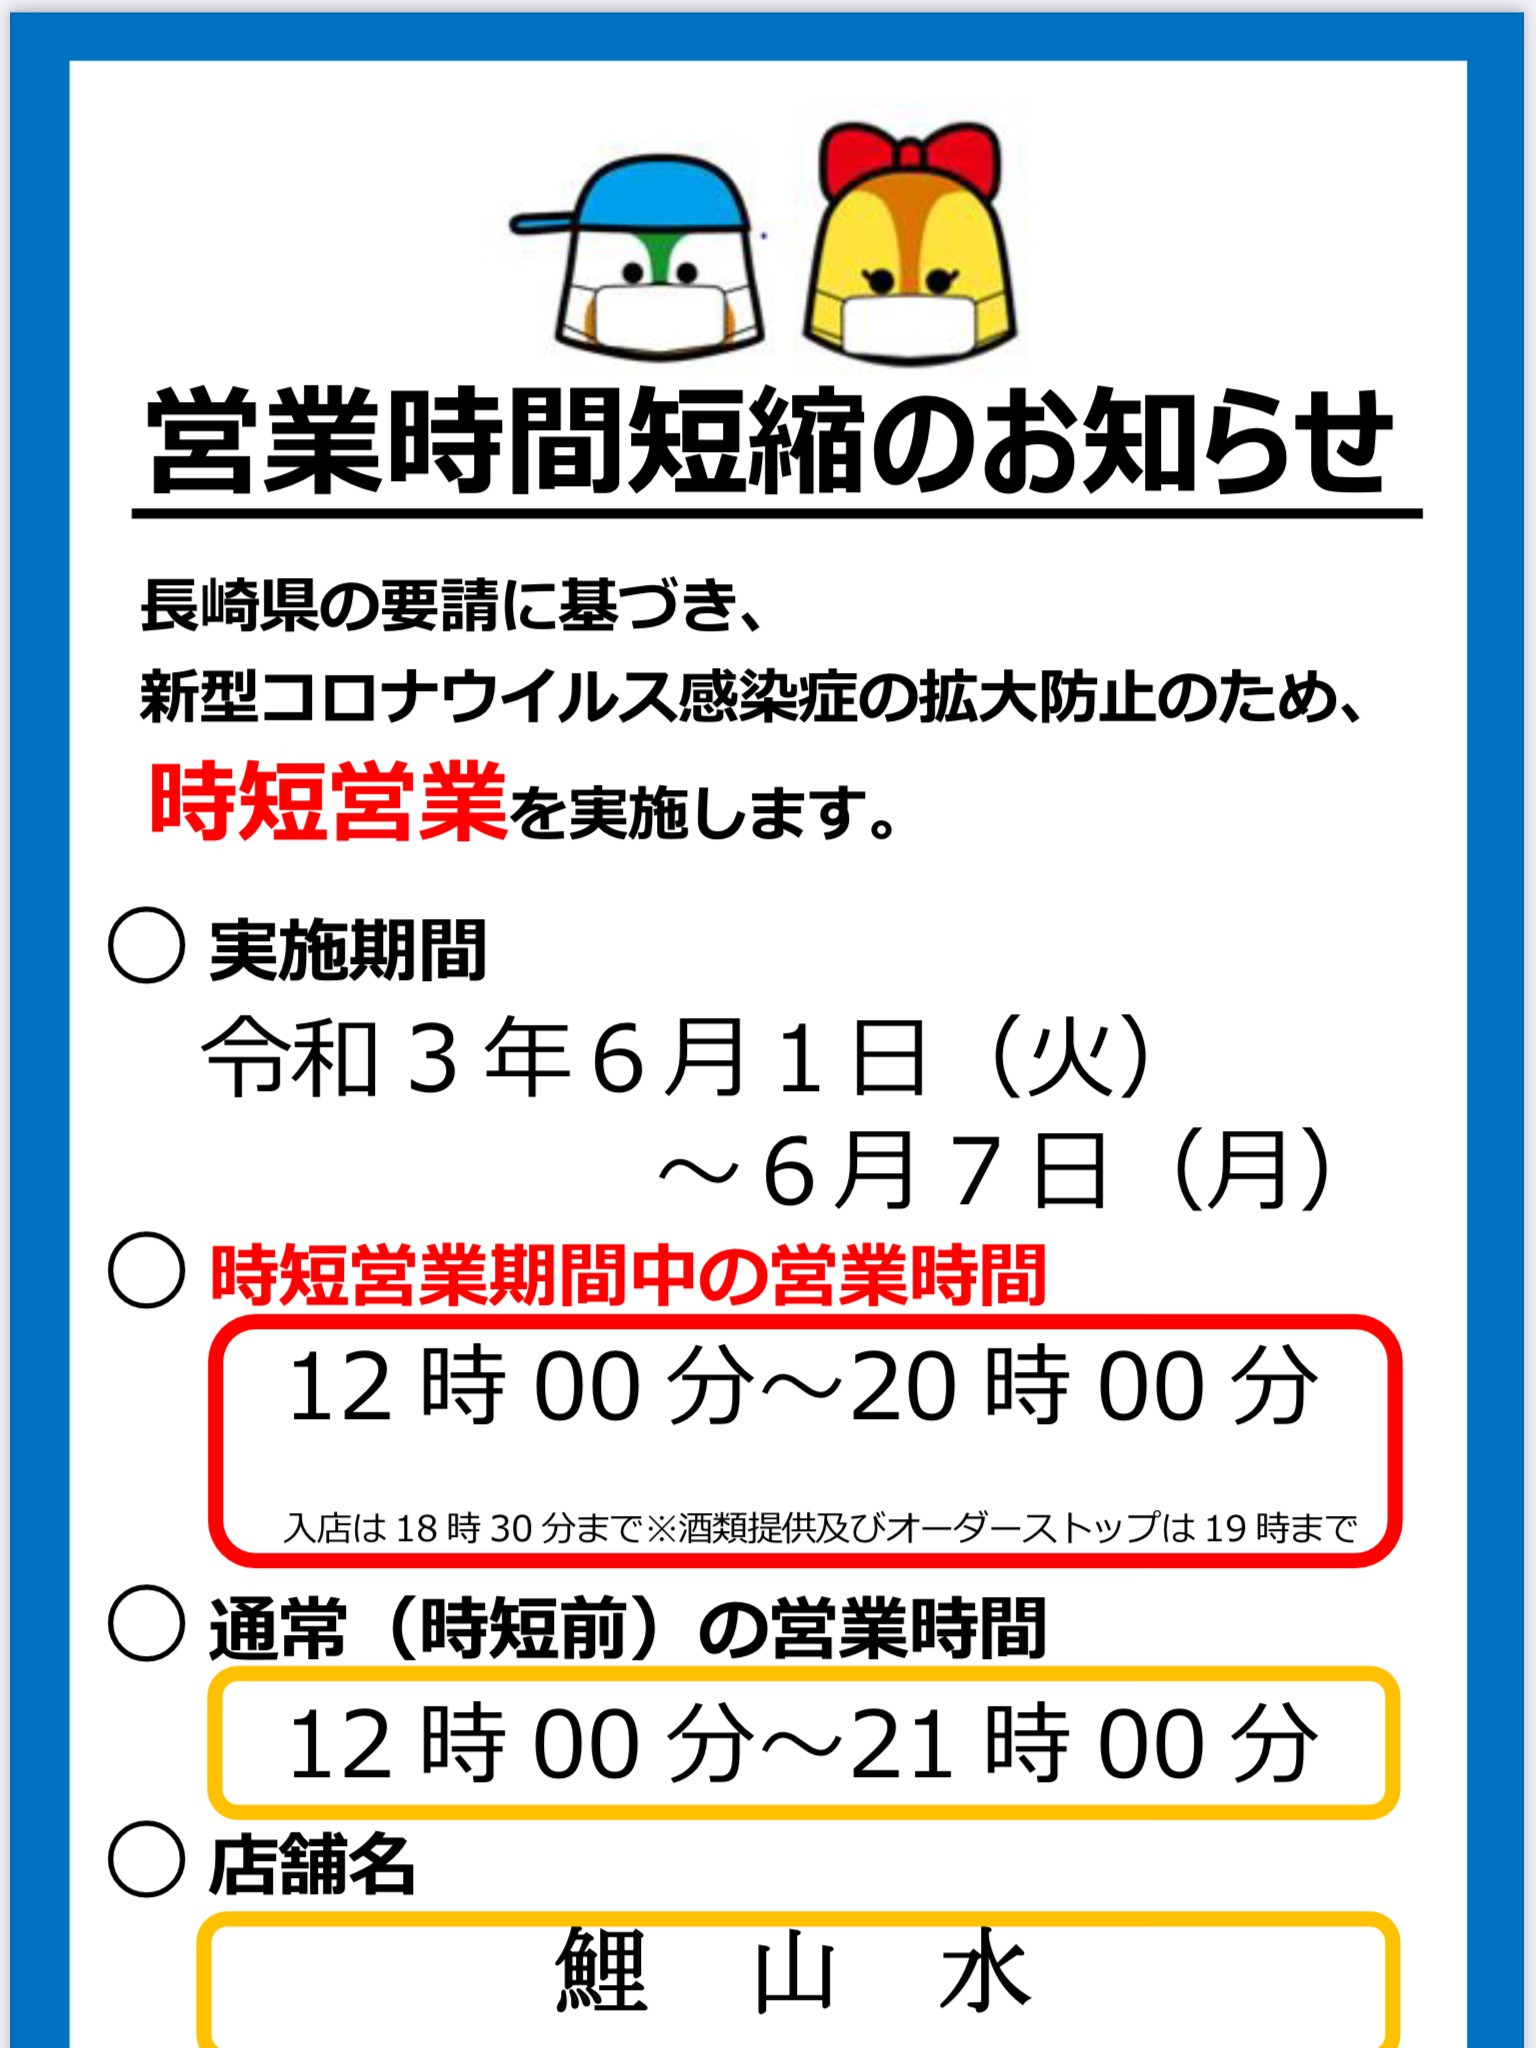 長崎市営業時間短縮要請の延長について